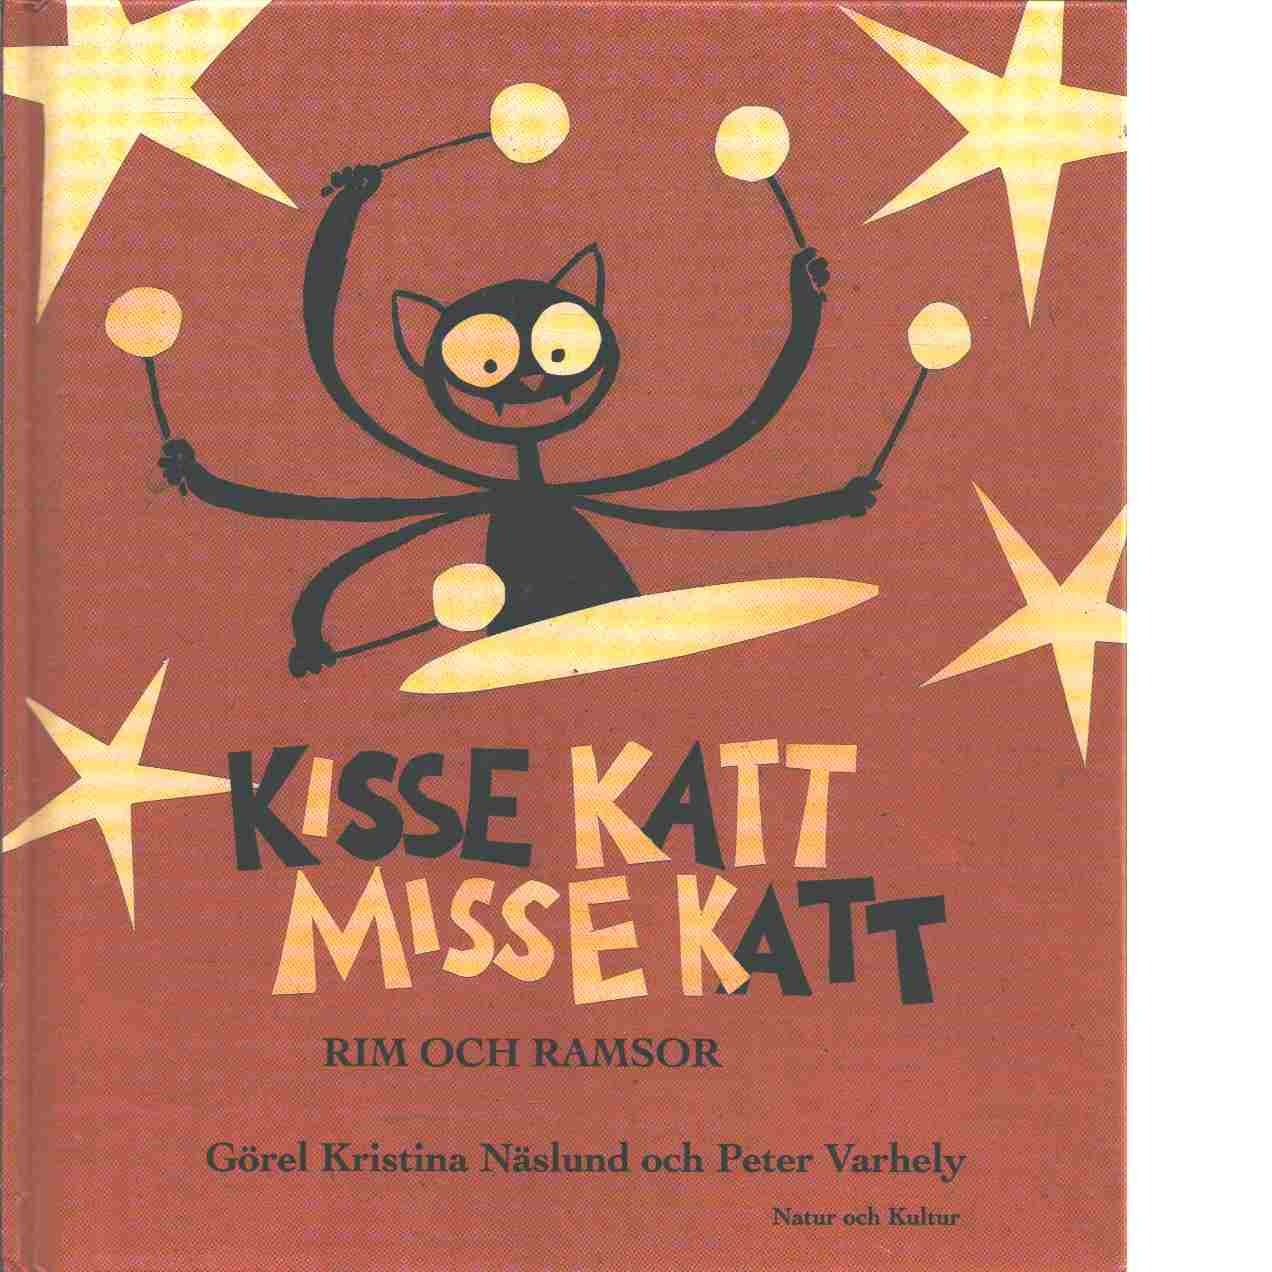 Kisse katt, Misse katt : rim och ramsor - Näslund, Görel Kristina och Varhelyi, Peter